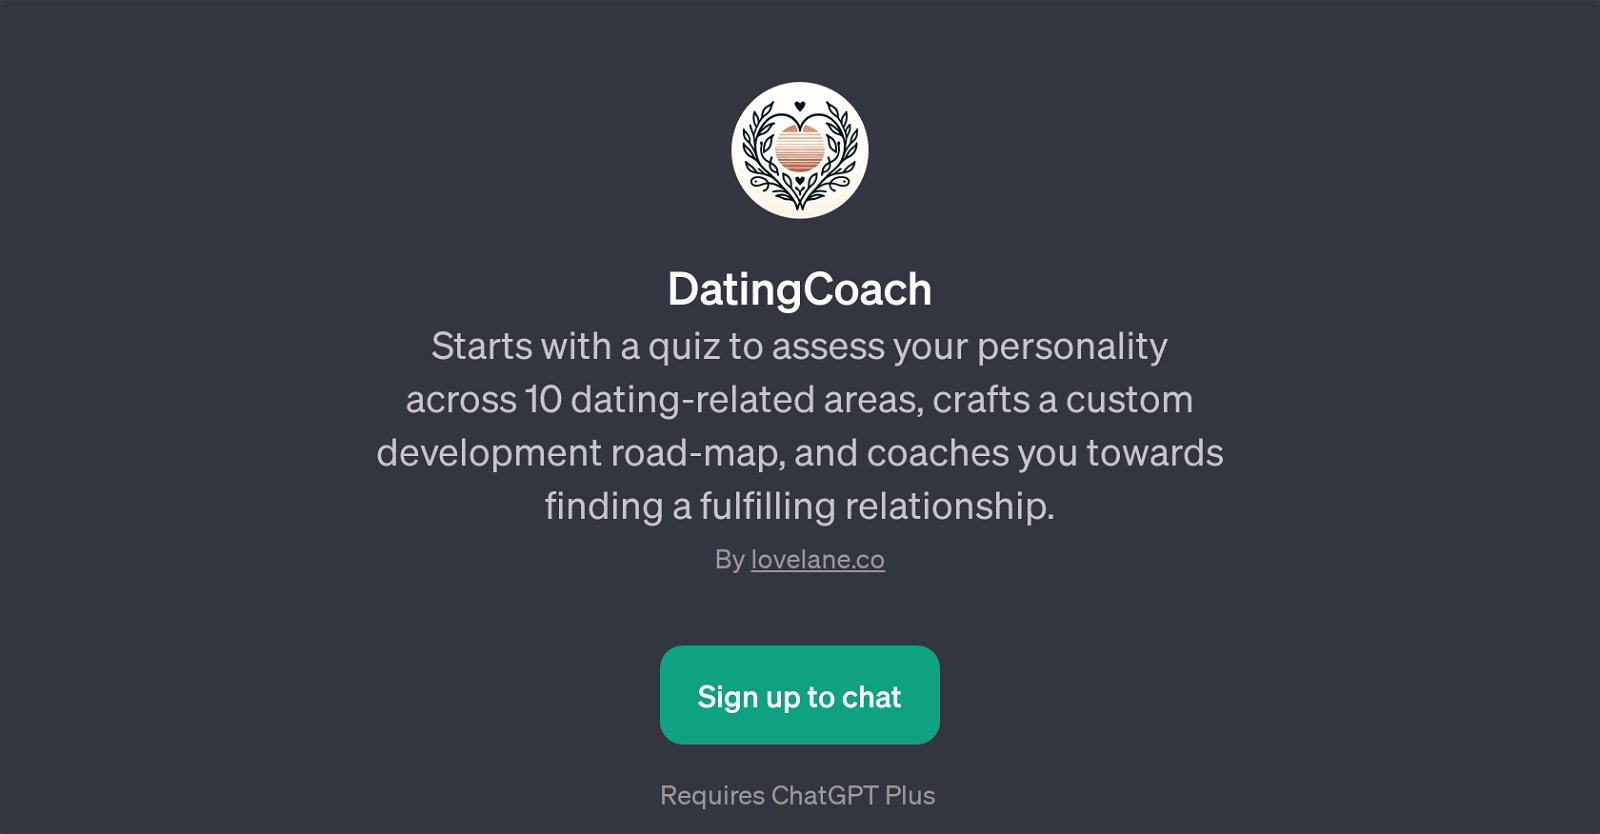 DatingCoach website